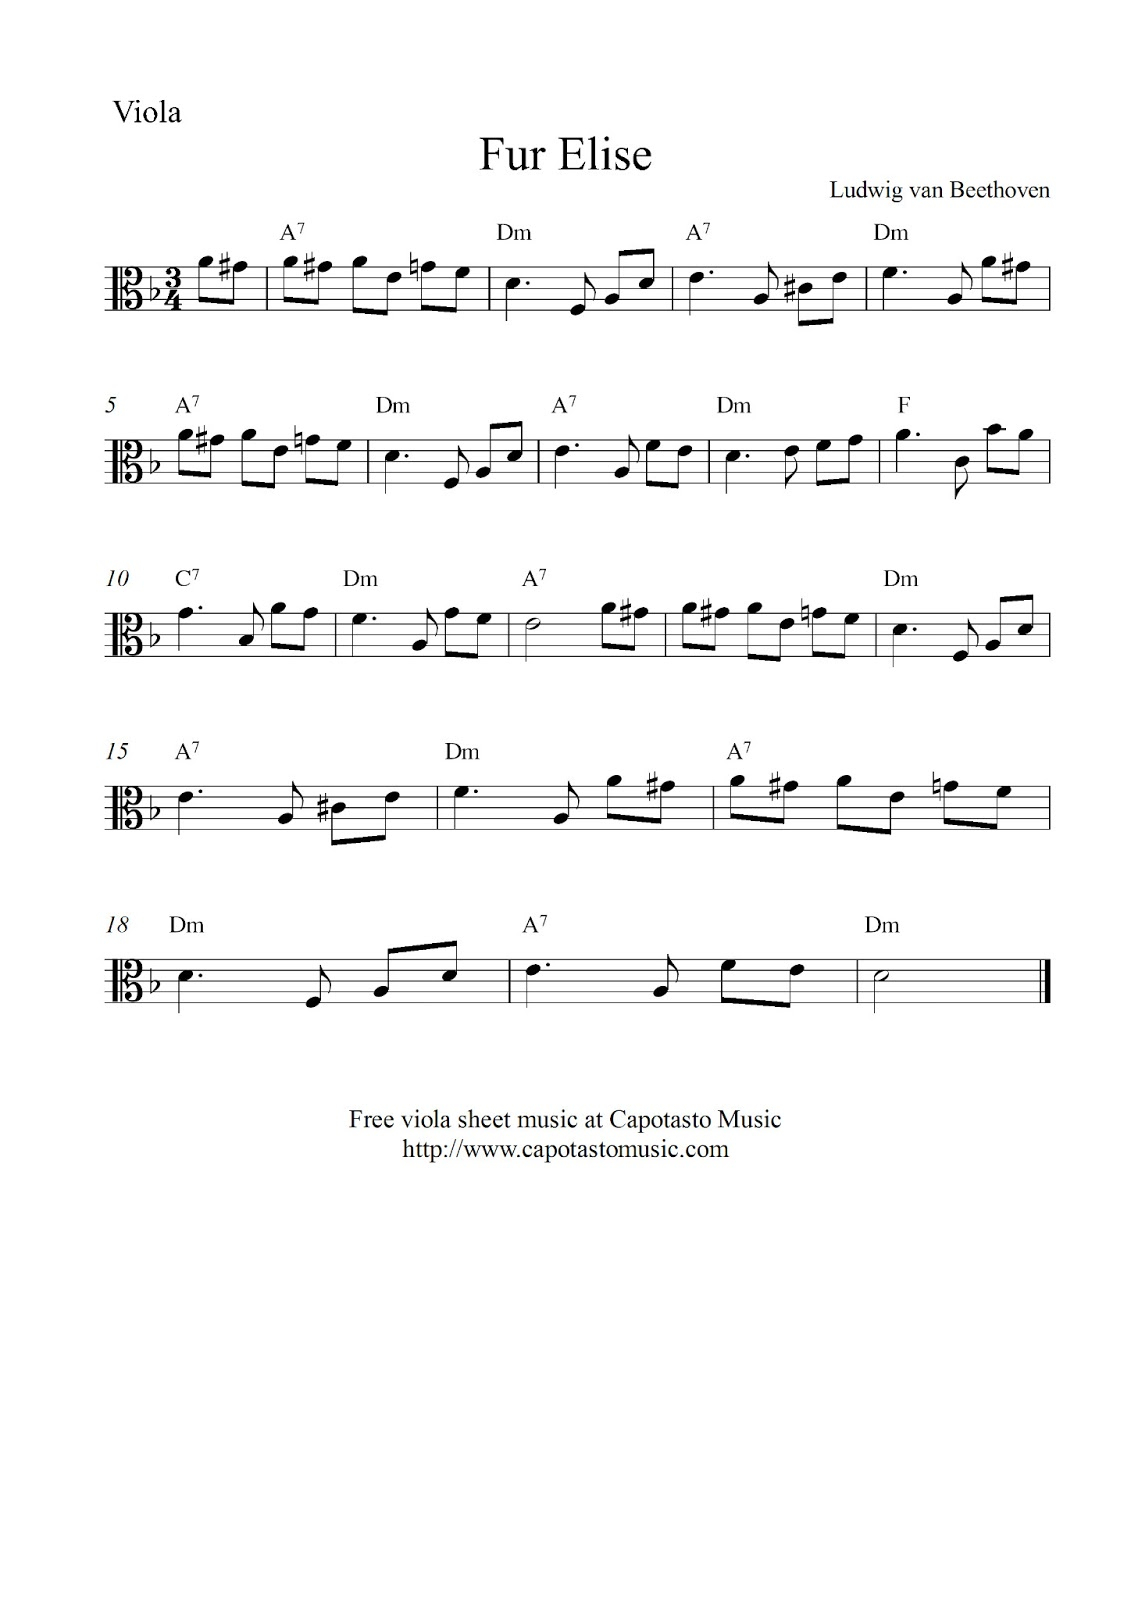 Free Viola Sheet Music Score, Fur Elise - Viola Sheet Music Free Printable